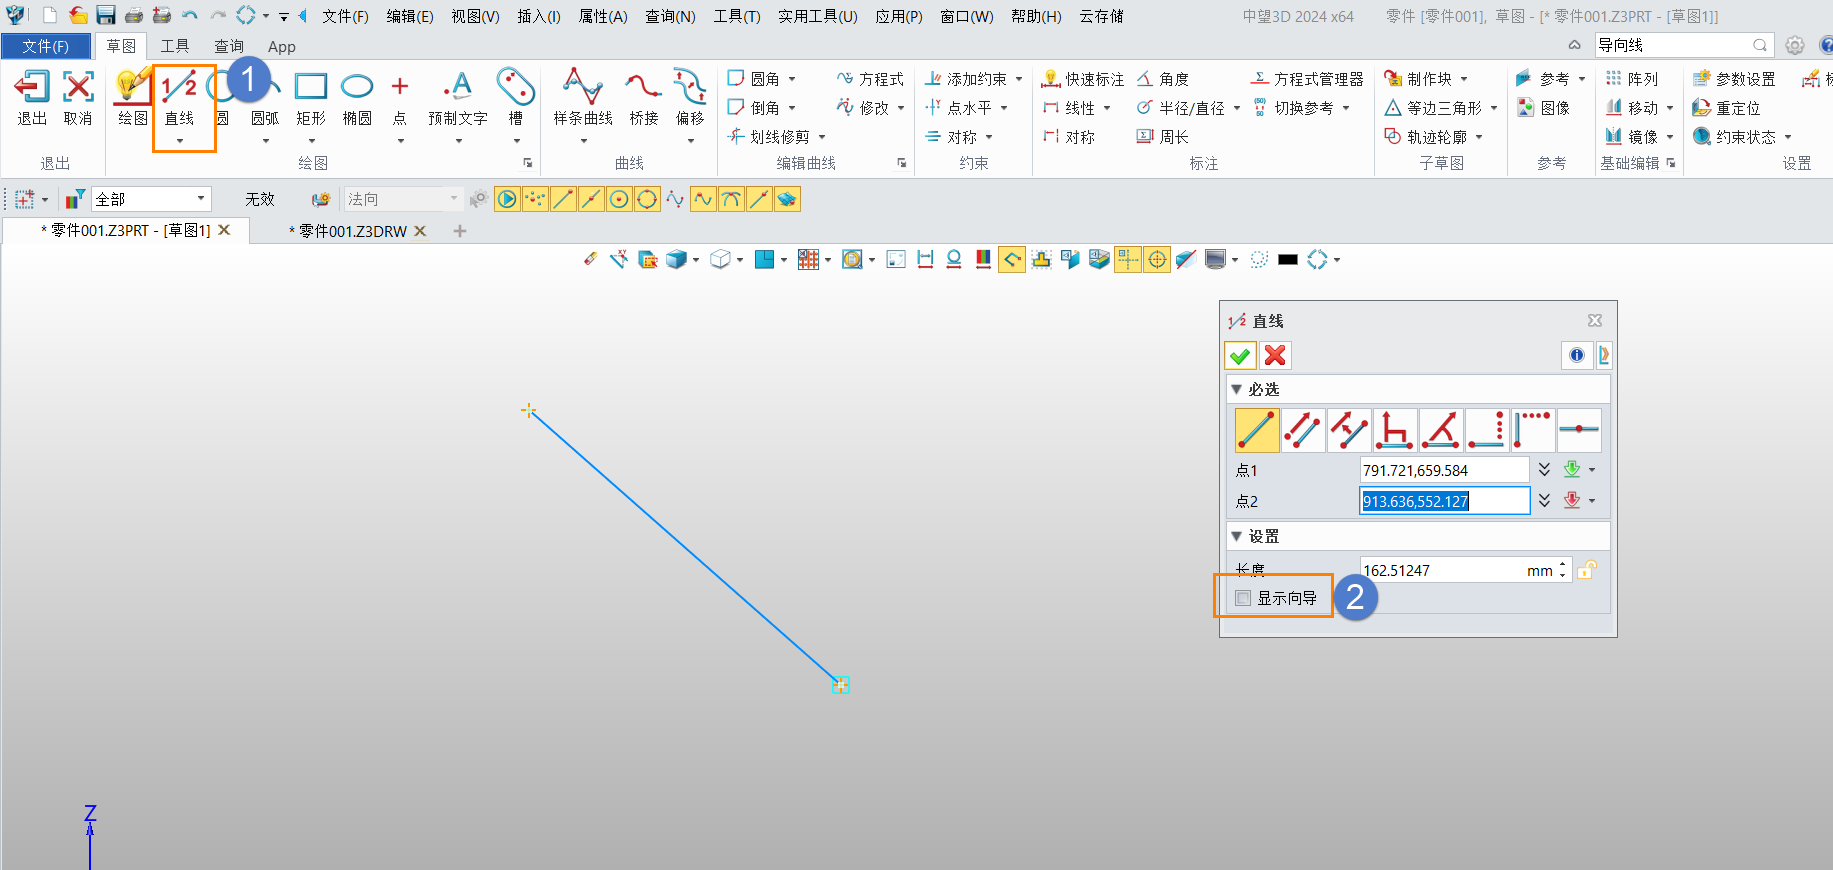 3D建模软件草图界面中绘制直线段时，如何取消沿着X和Y方向的导向线？